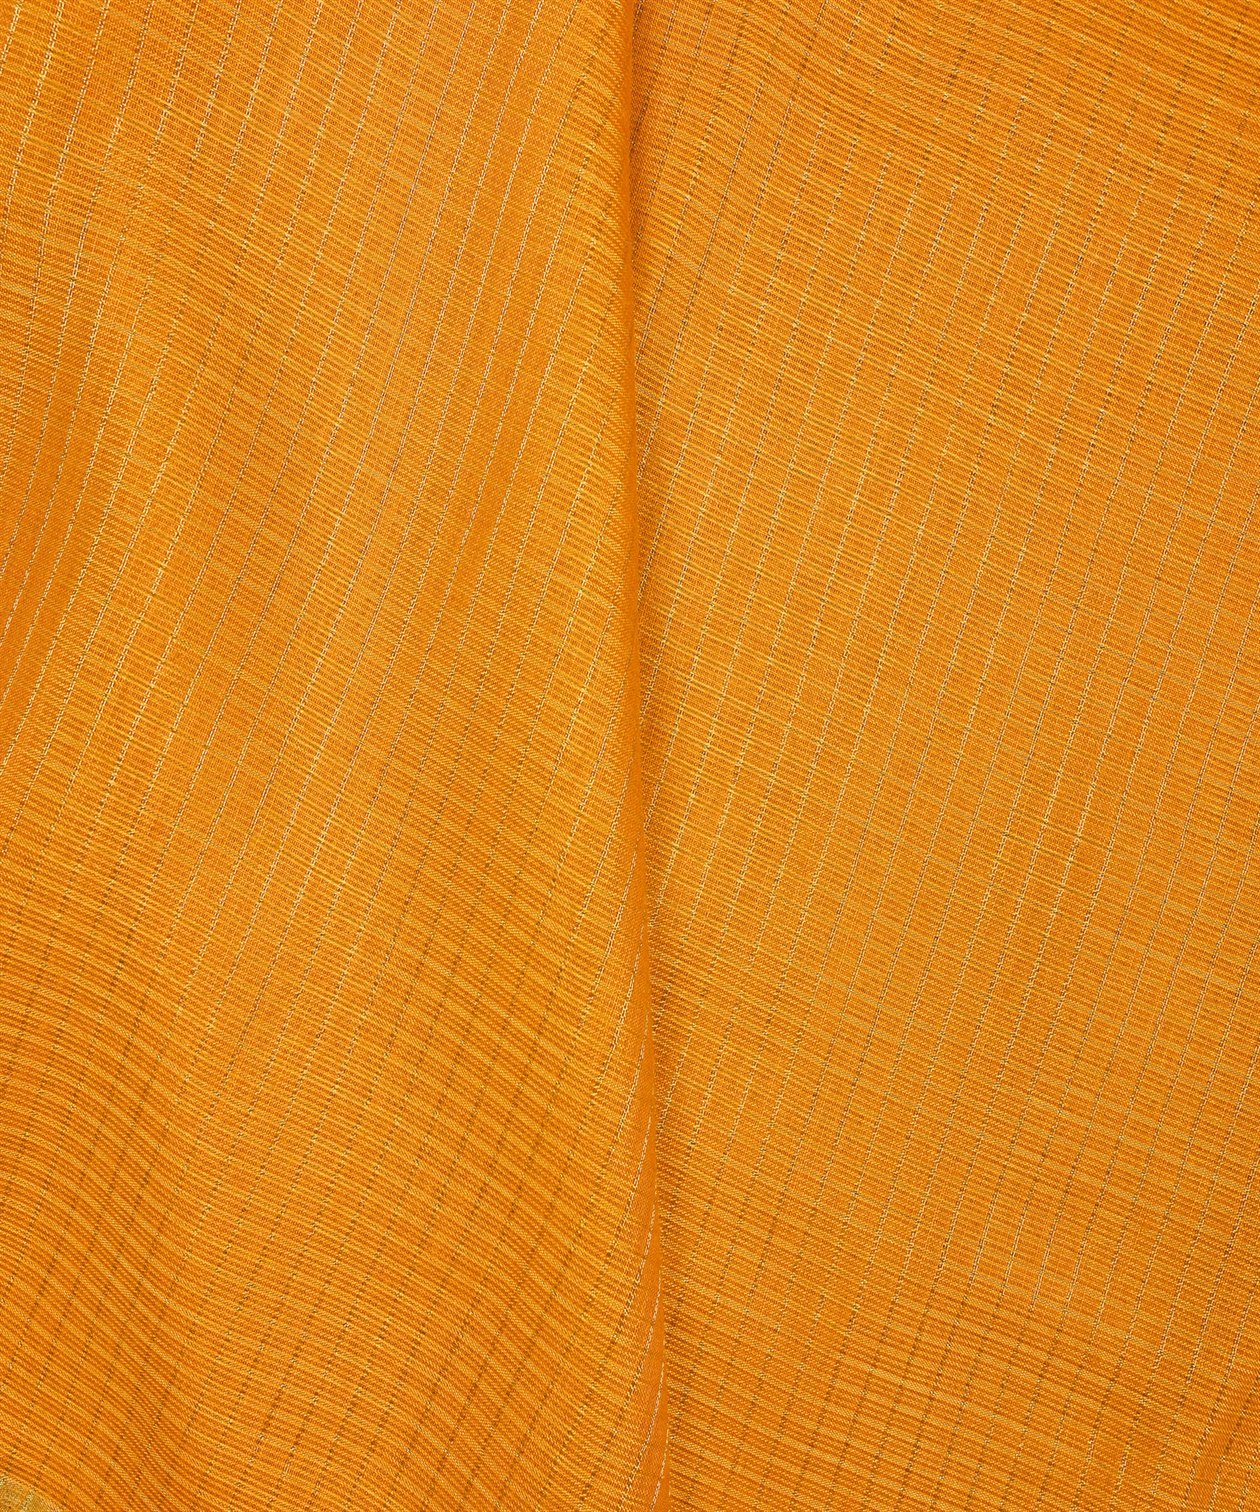 Mustard Yellow Kota fabric with Zari Checks